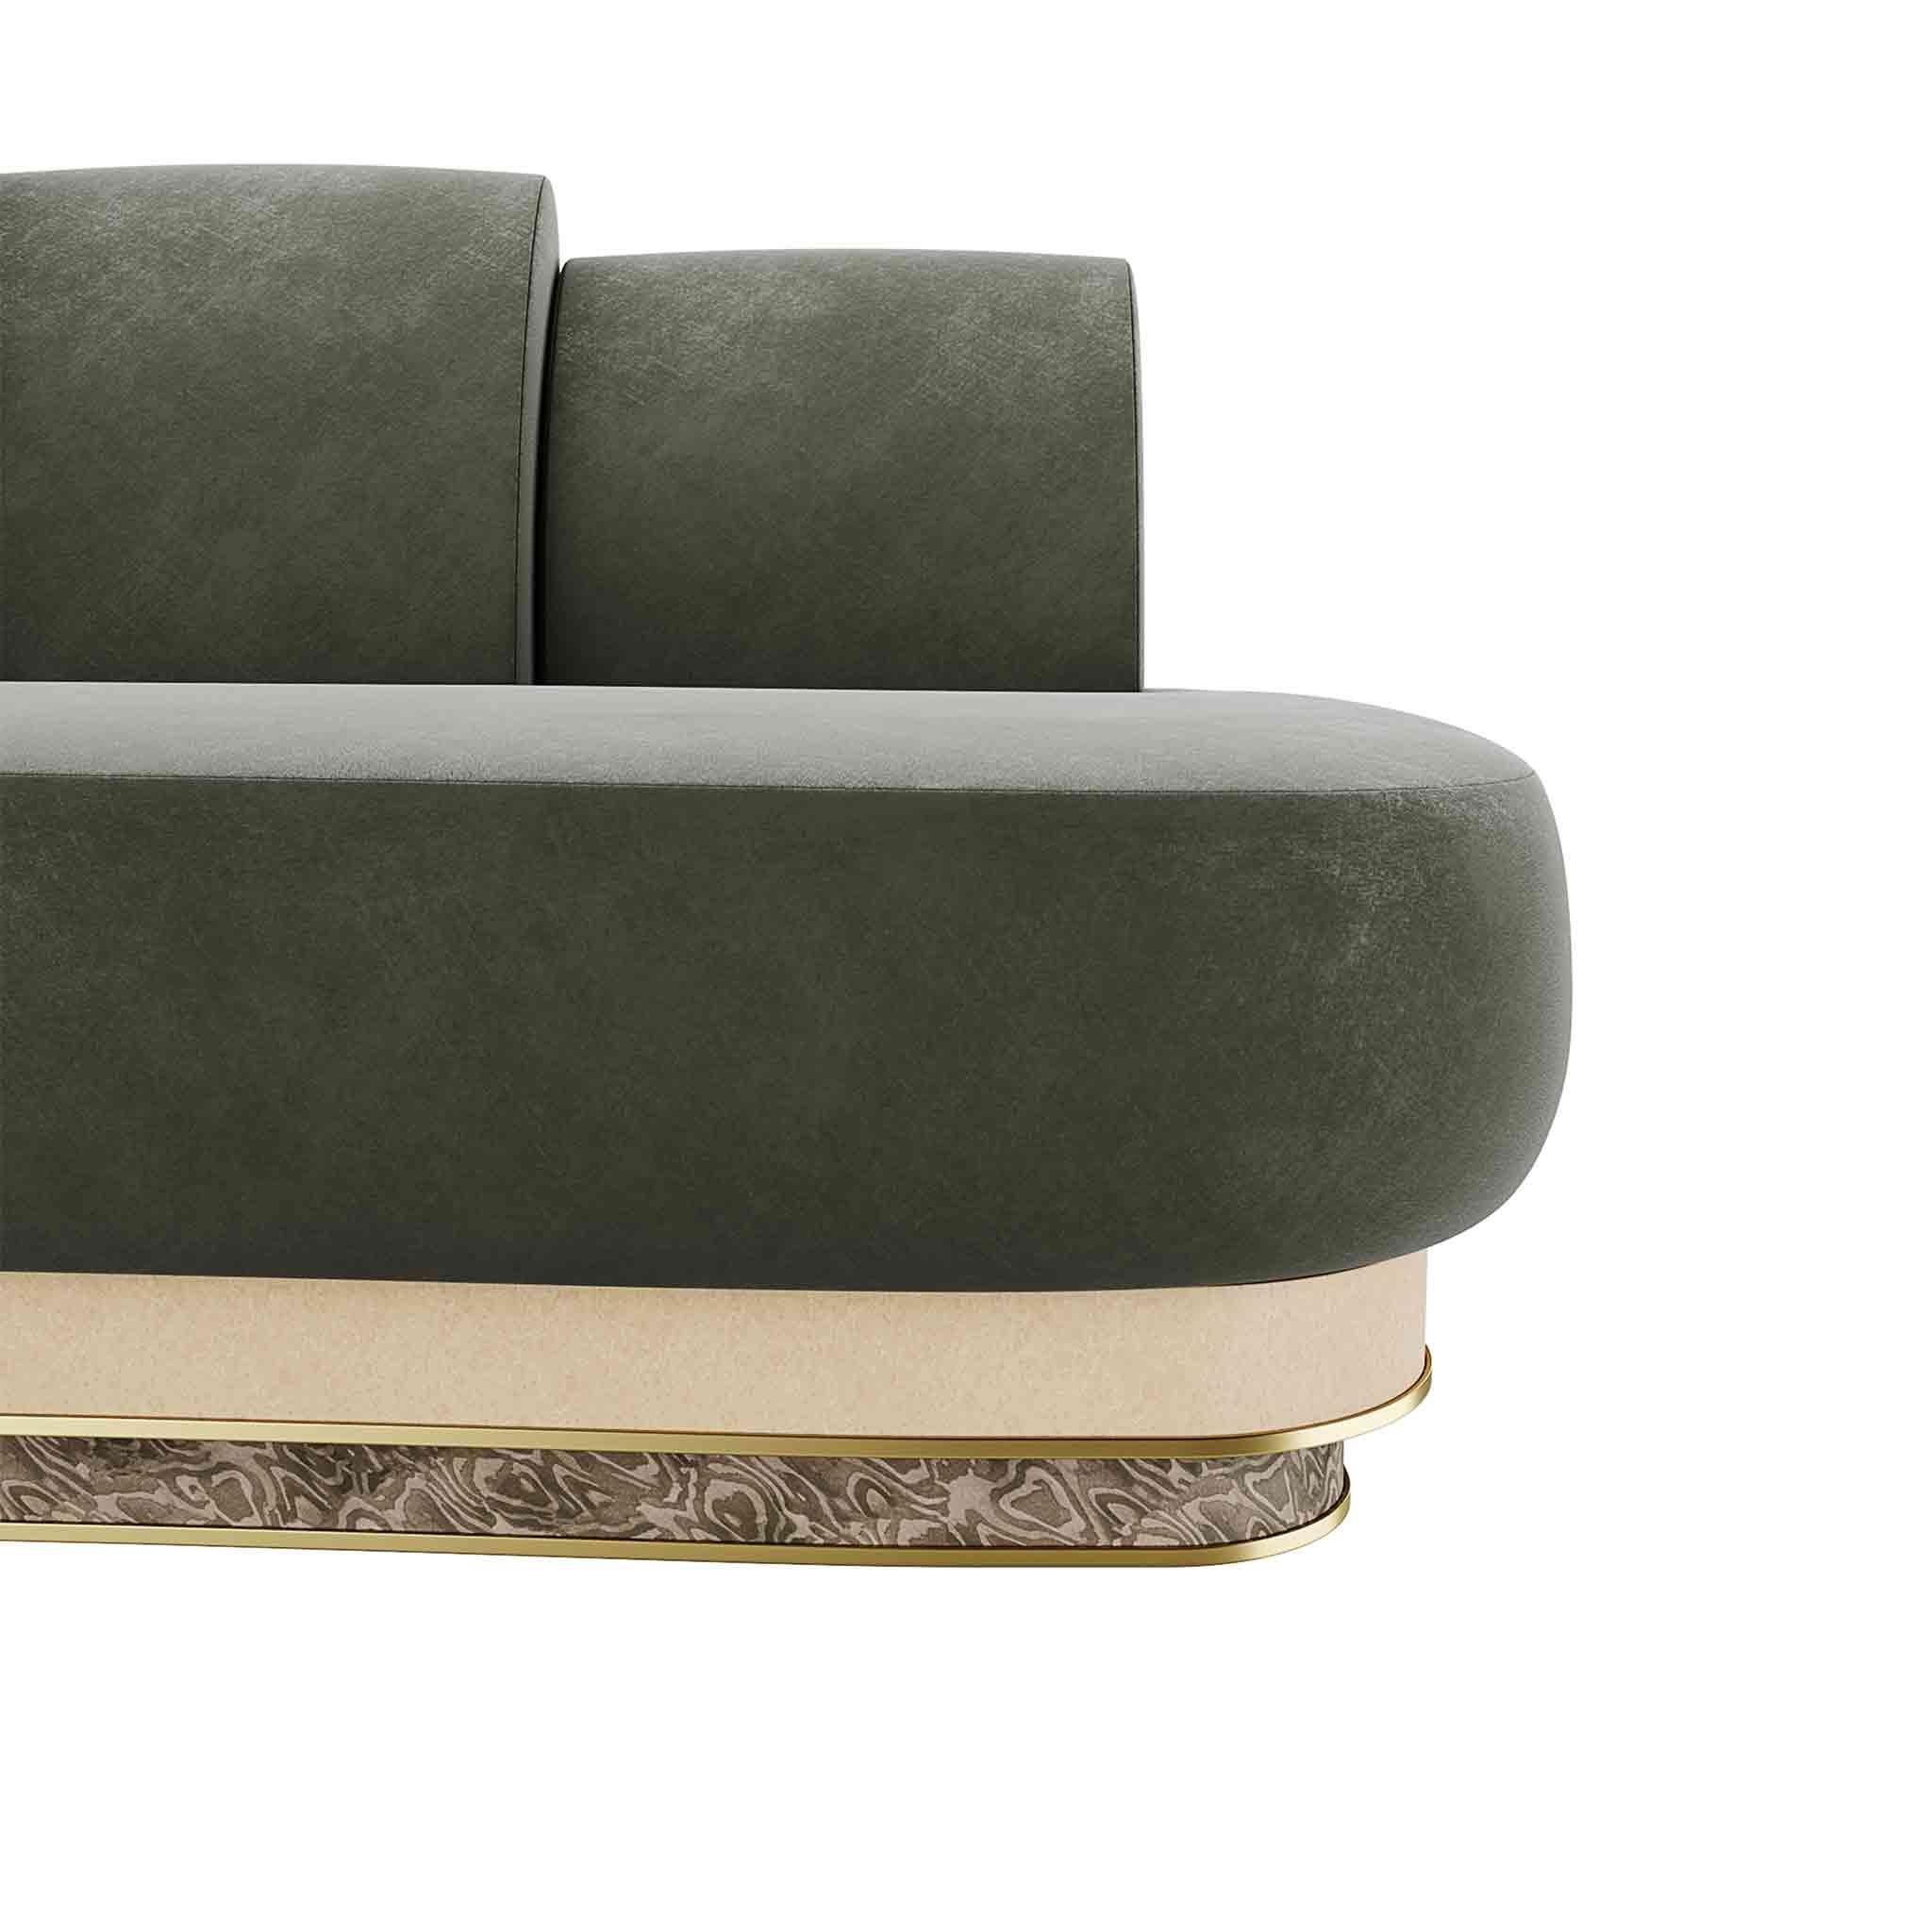 Kara Sofa ist ein Sofa im Art-Deco-Stil. Die Inspirationen des Art déco spiegeln sich in den Formen wider und lassen einen eklektischen, luxuriösen Stil erkennen. Dieses moderne Designsofa verspricht, der absolute Protagonist eines